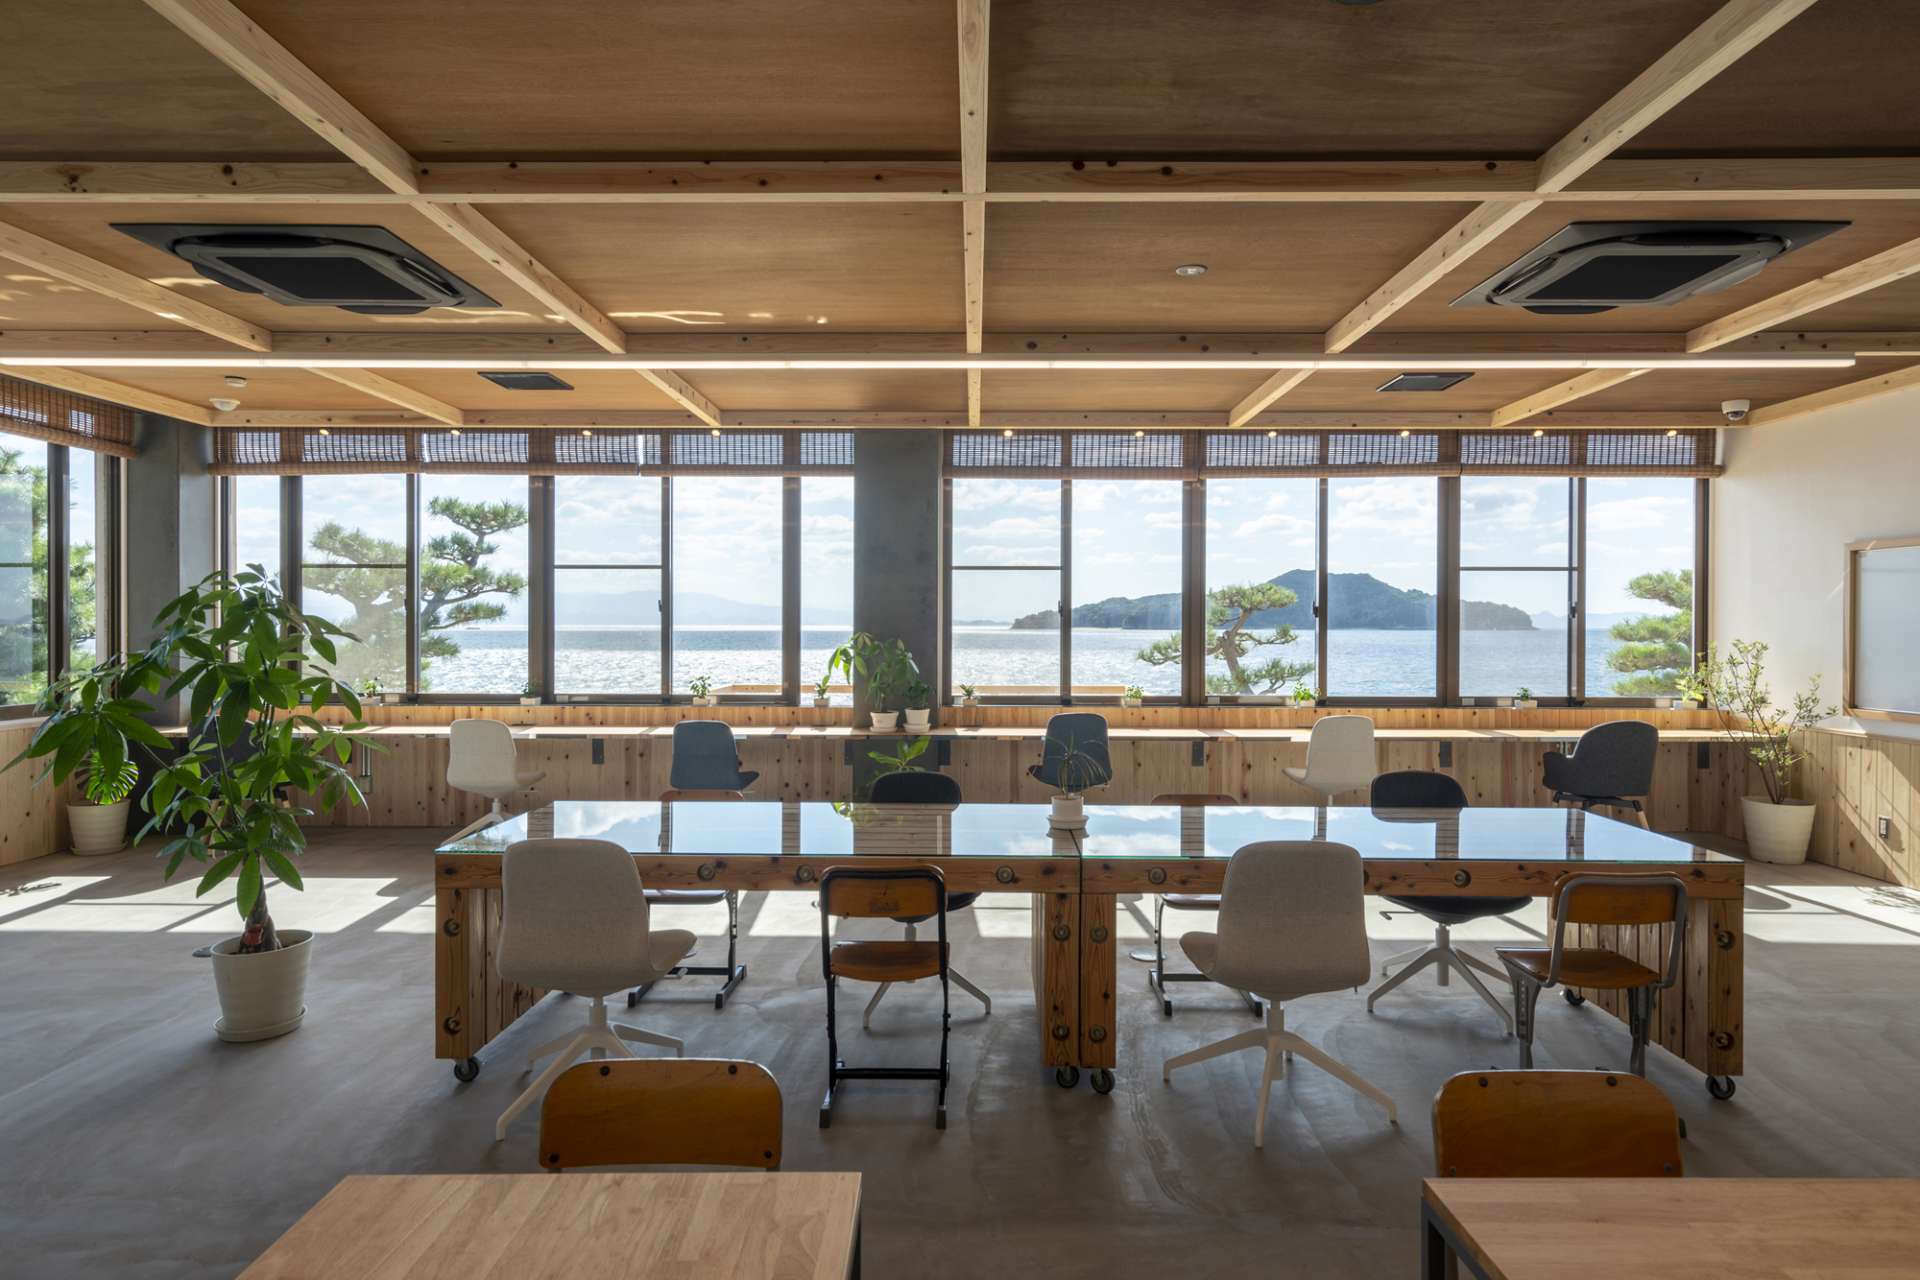 広島市でかっこよくて、おしゃれなフルリノベーションによるデザイナーズ住宅の設計をお考えの方は設計事務所asazu design office